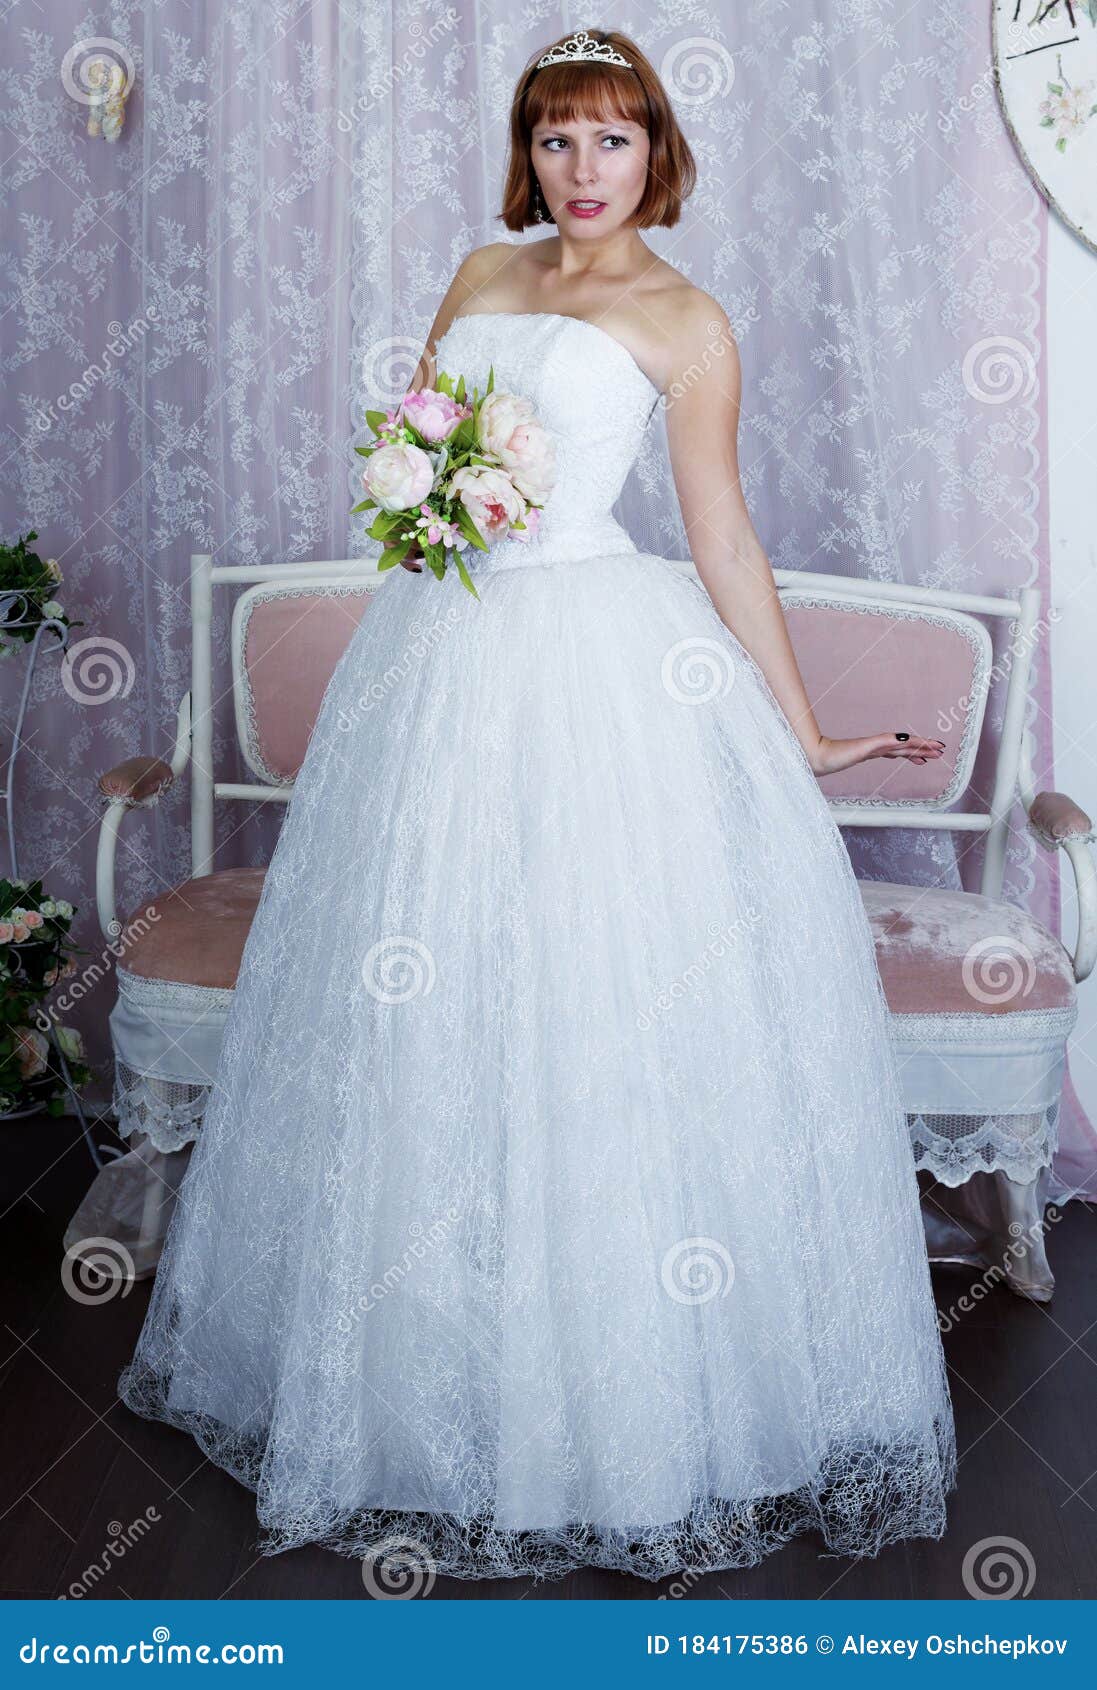 pretty bride posing in wedding dress